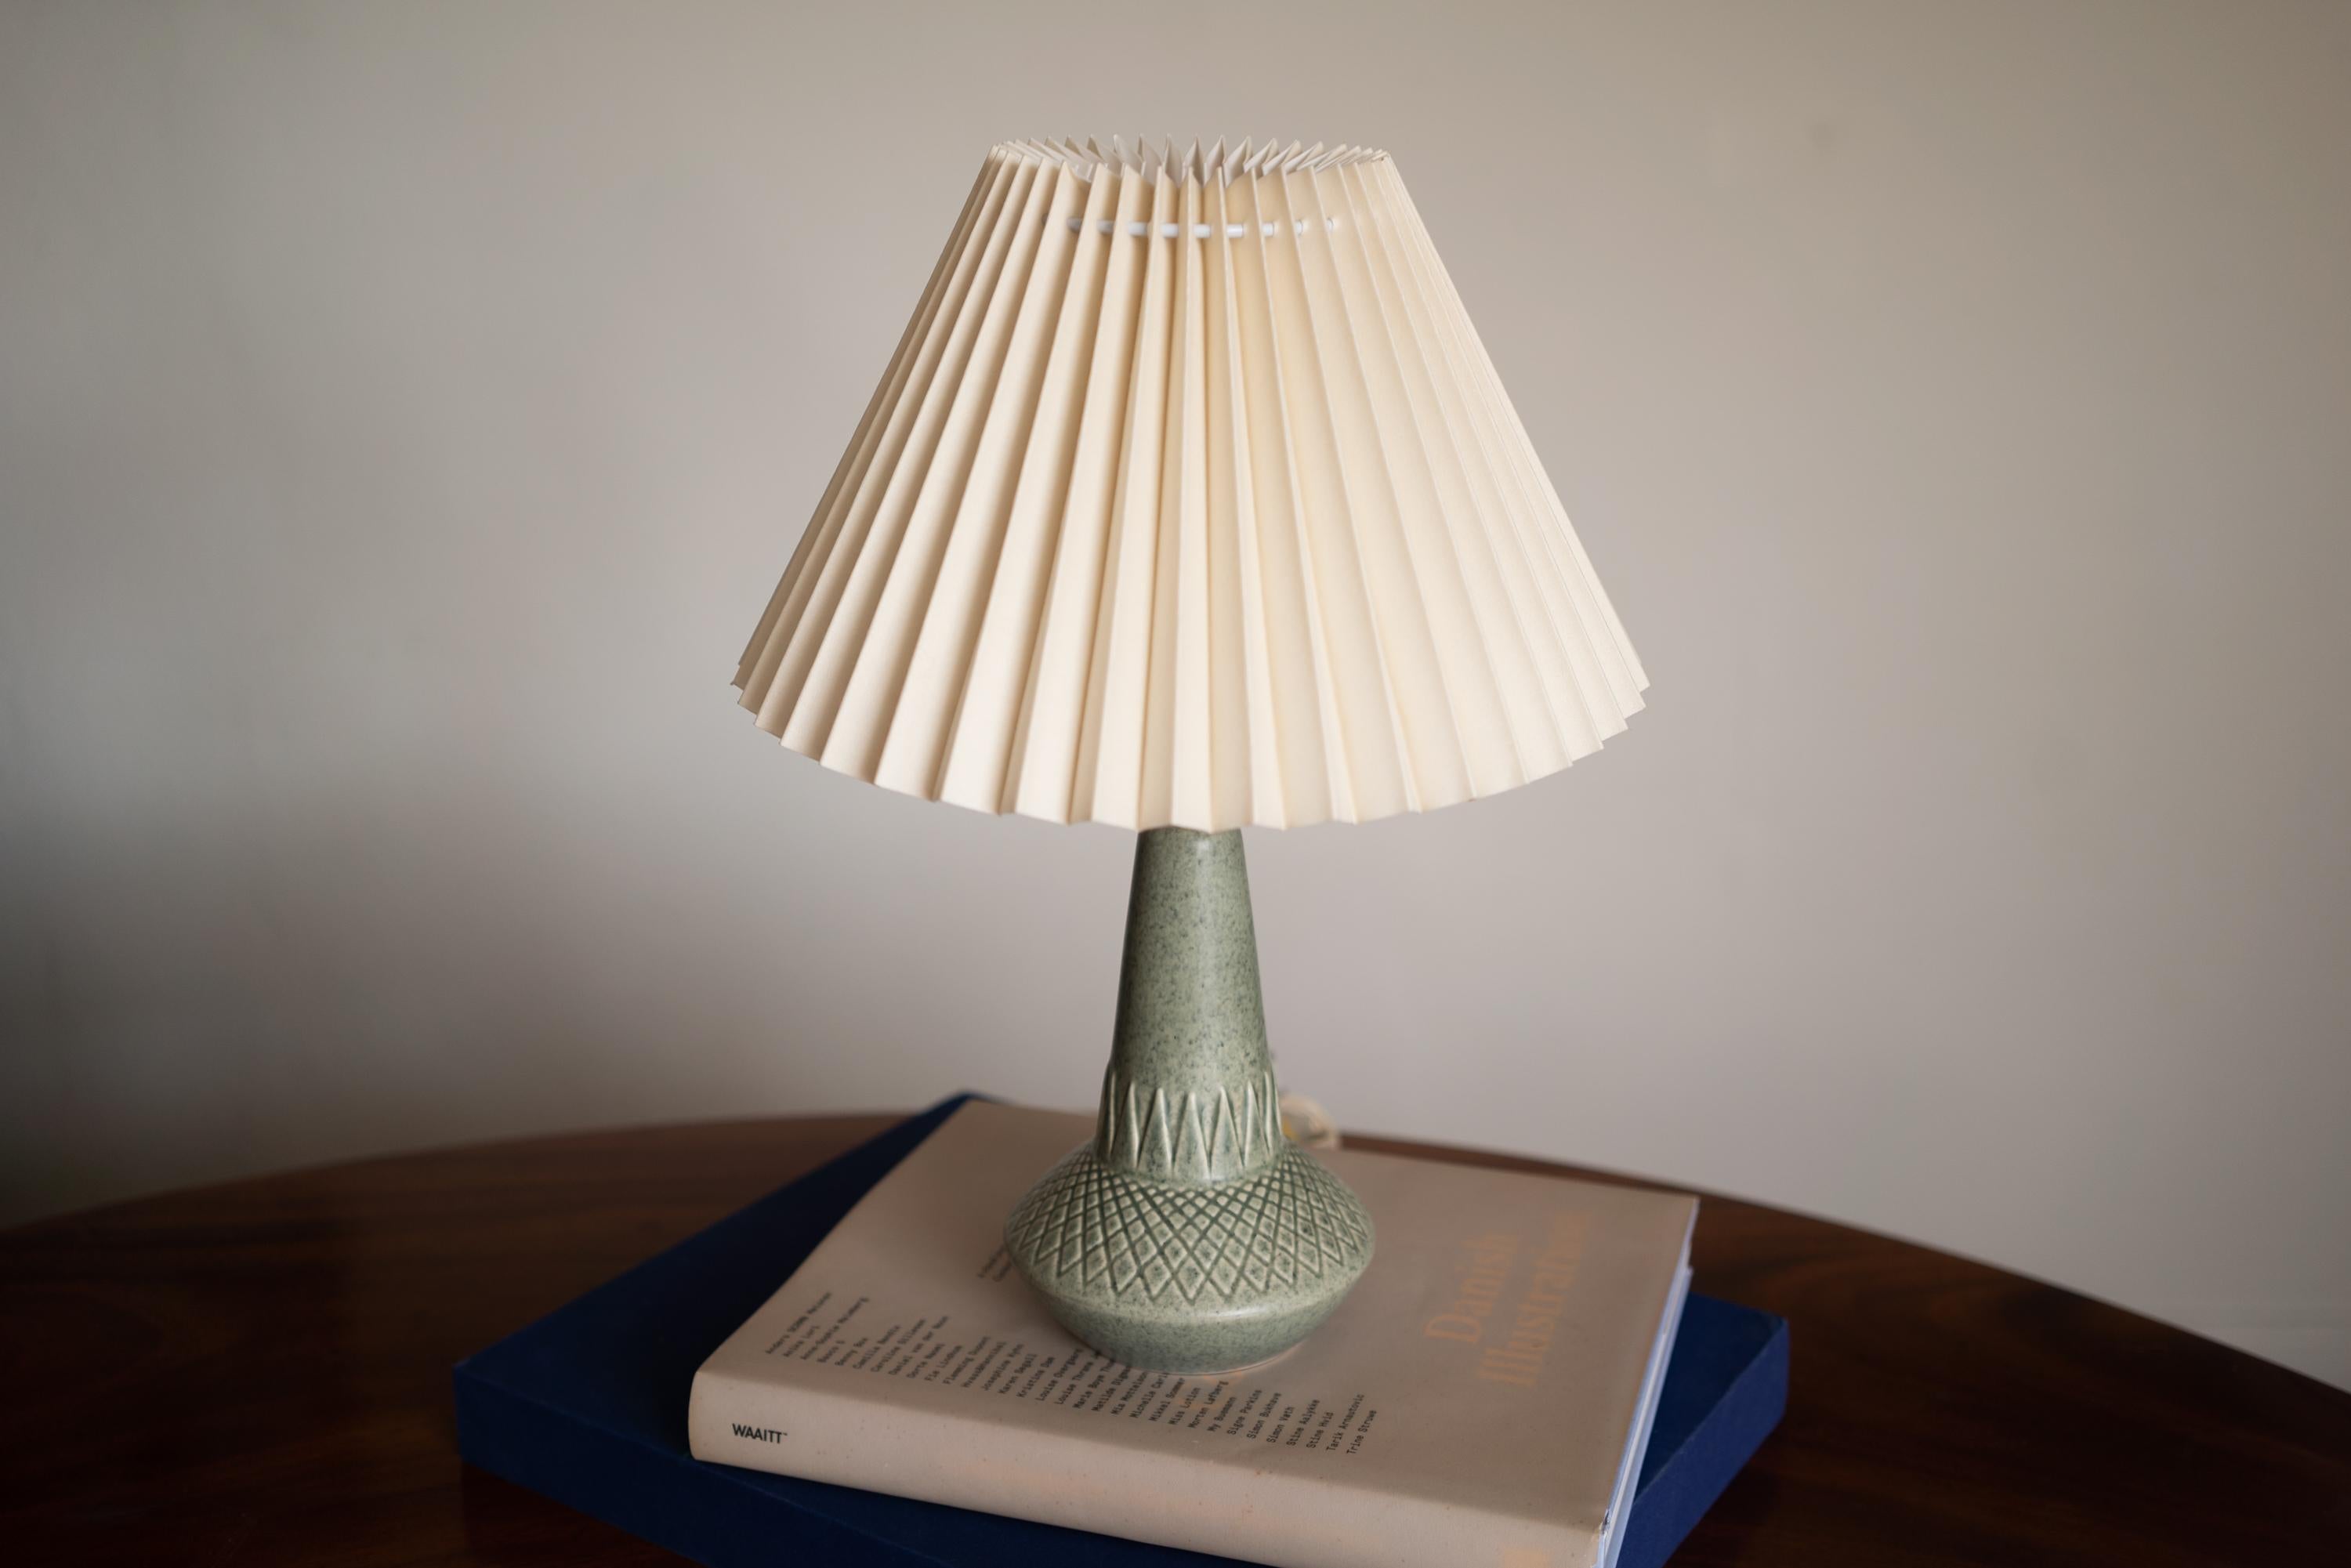 Petite lampe de table par Einar Johansen pour Søholm Stentøj, Danemark, années 1960.

Estampillé et signé sur la base.

Vendu sans abat-jour. La hauteur inclut la douille. Entièrement fonctionnel et en très bon état.